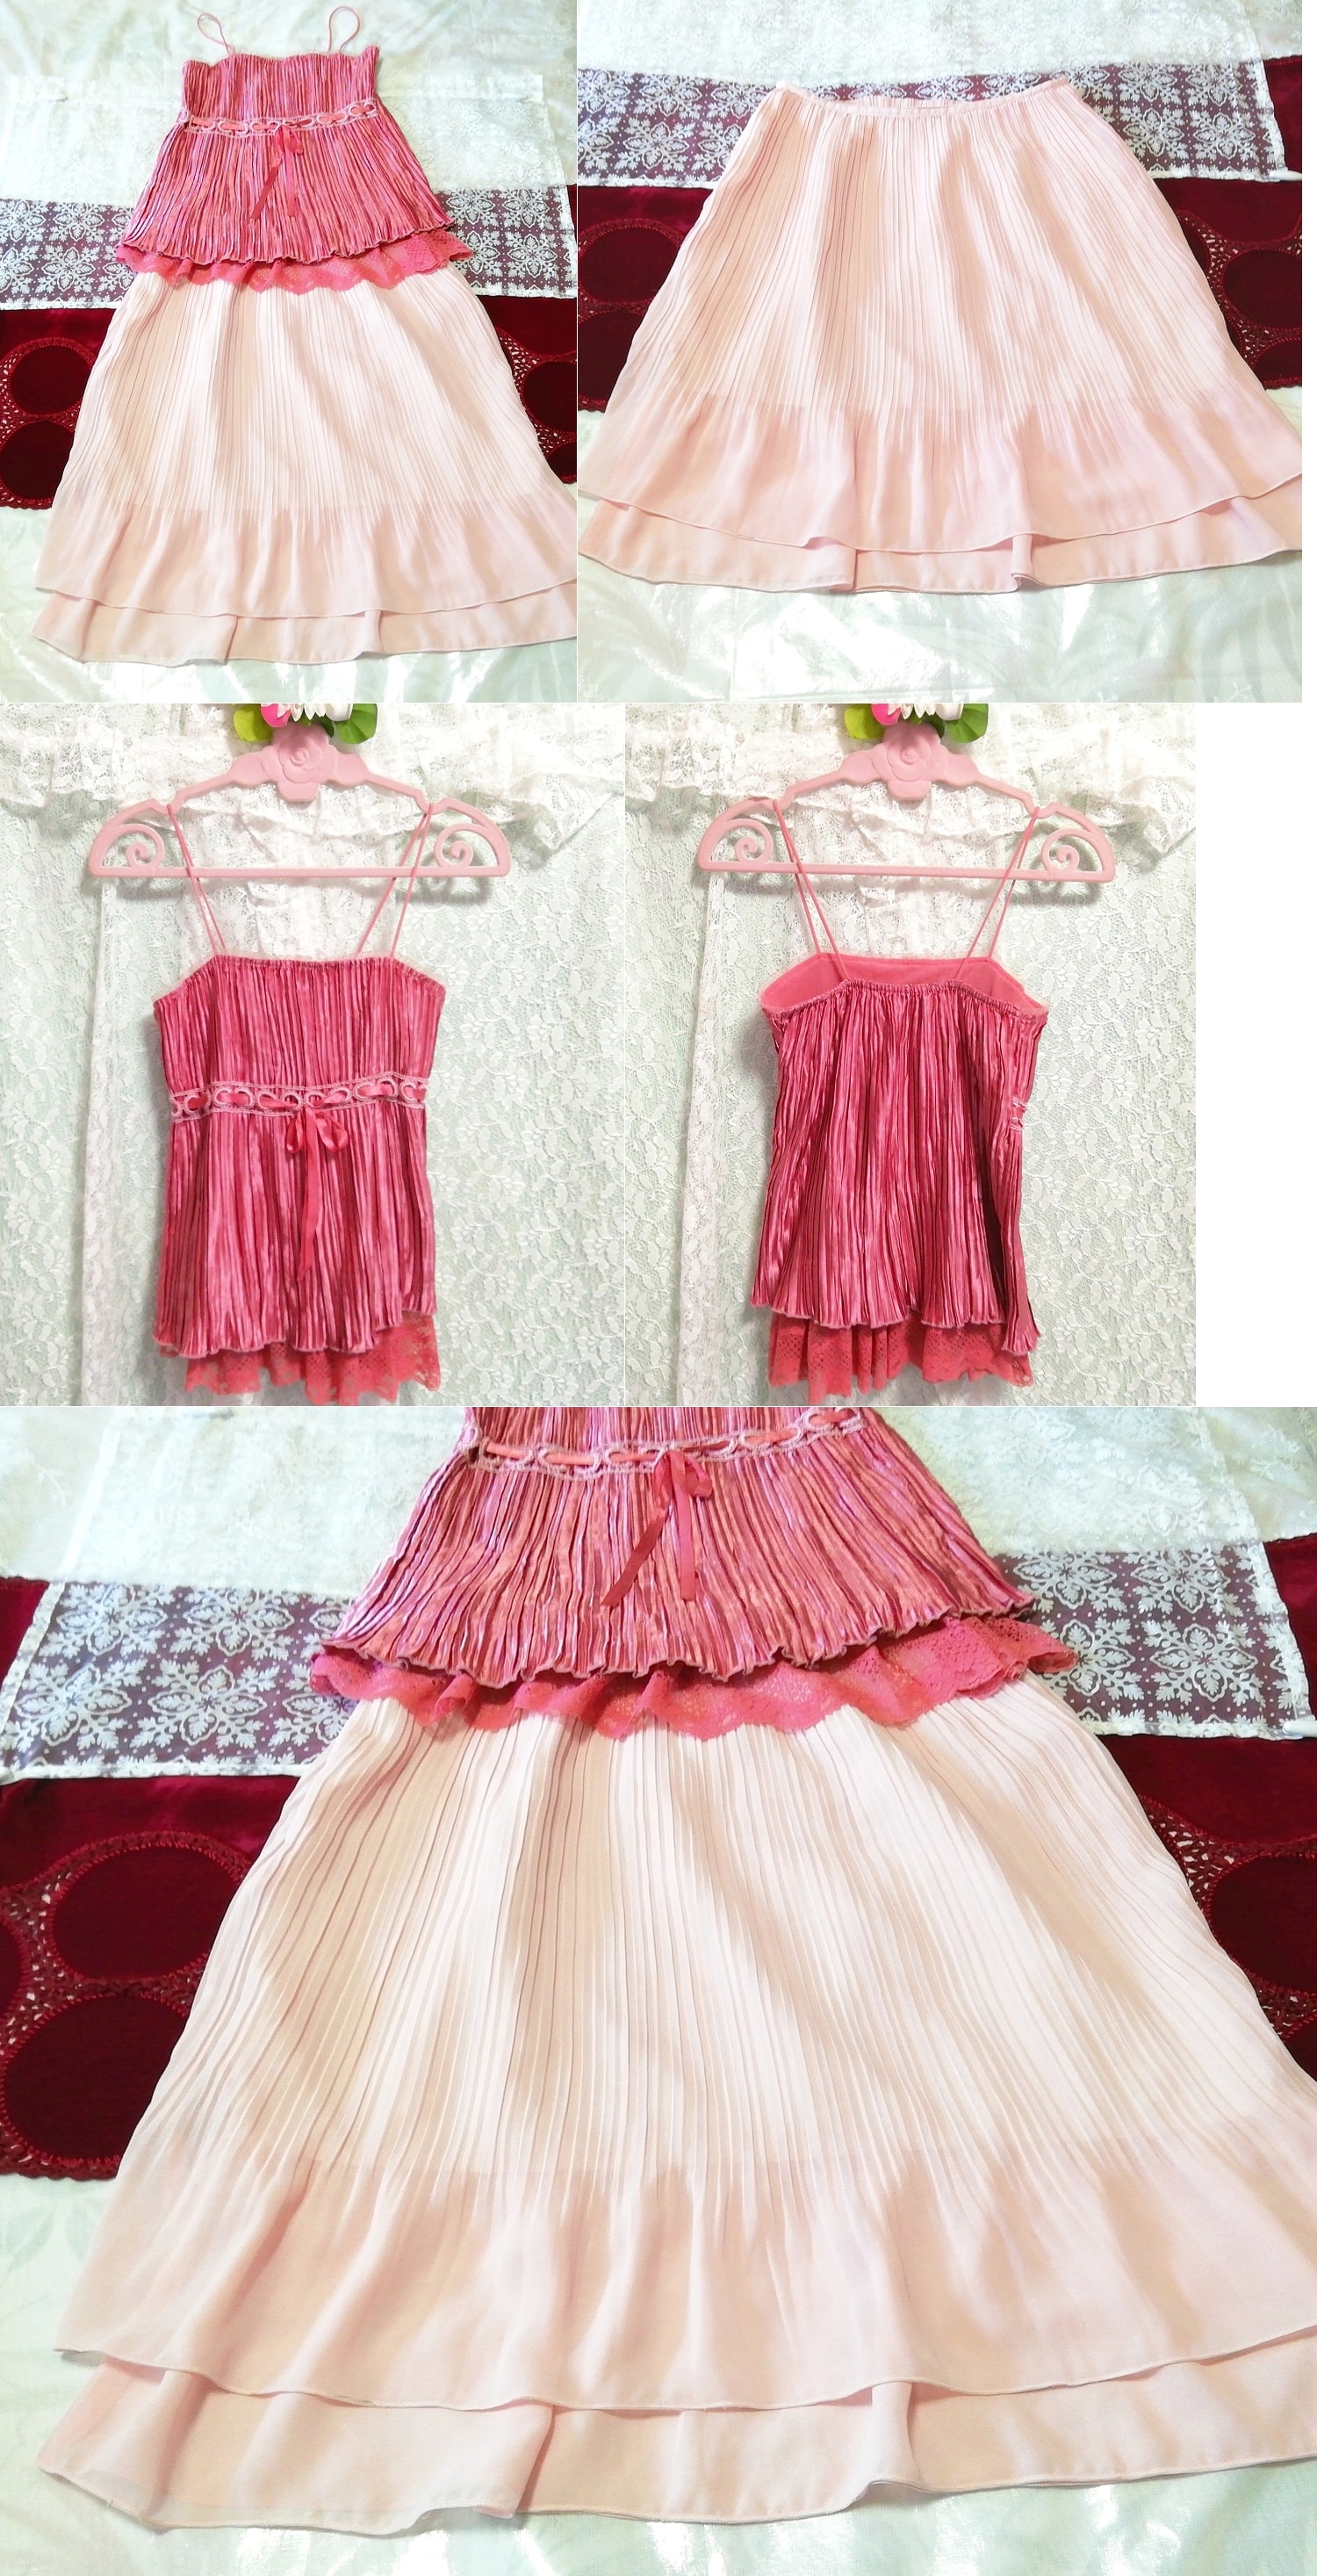 ピンクサテンレースキャミソール ネグリジェ ピンクシフォンプリーツスカート 2P Pink satin lace camisole negligee pink chiffon skirt, ファッション, レディースファッション, ナイトウエア、パジャマ